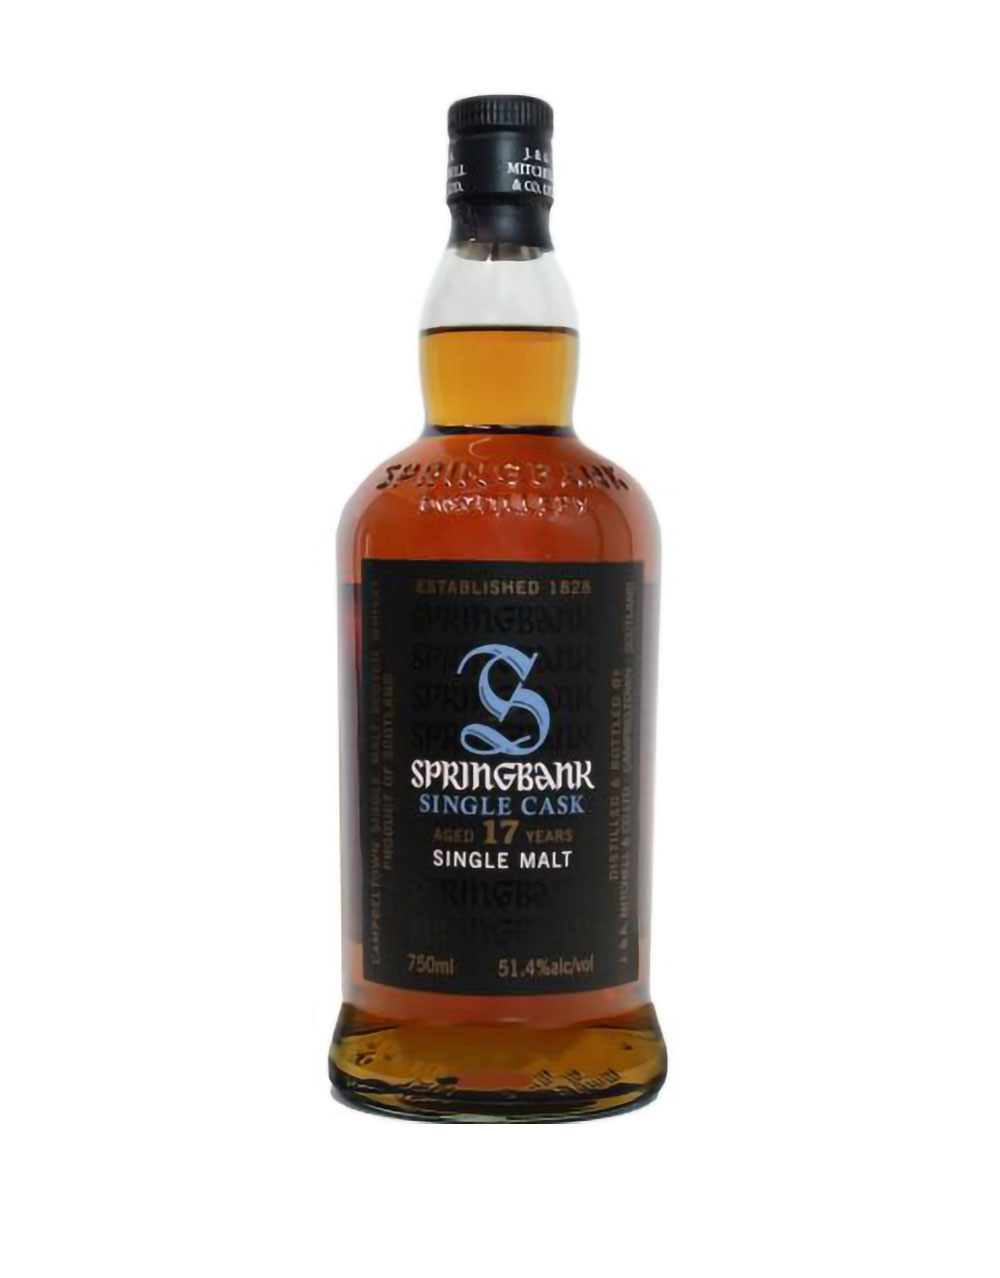 Springbank 17 Year Old Single Cask Single Malt Scotch Whisky